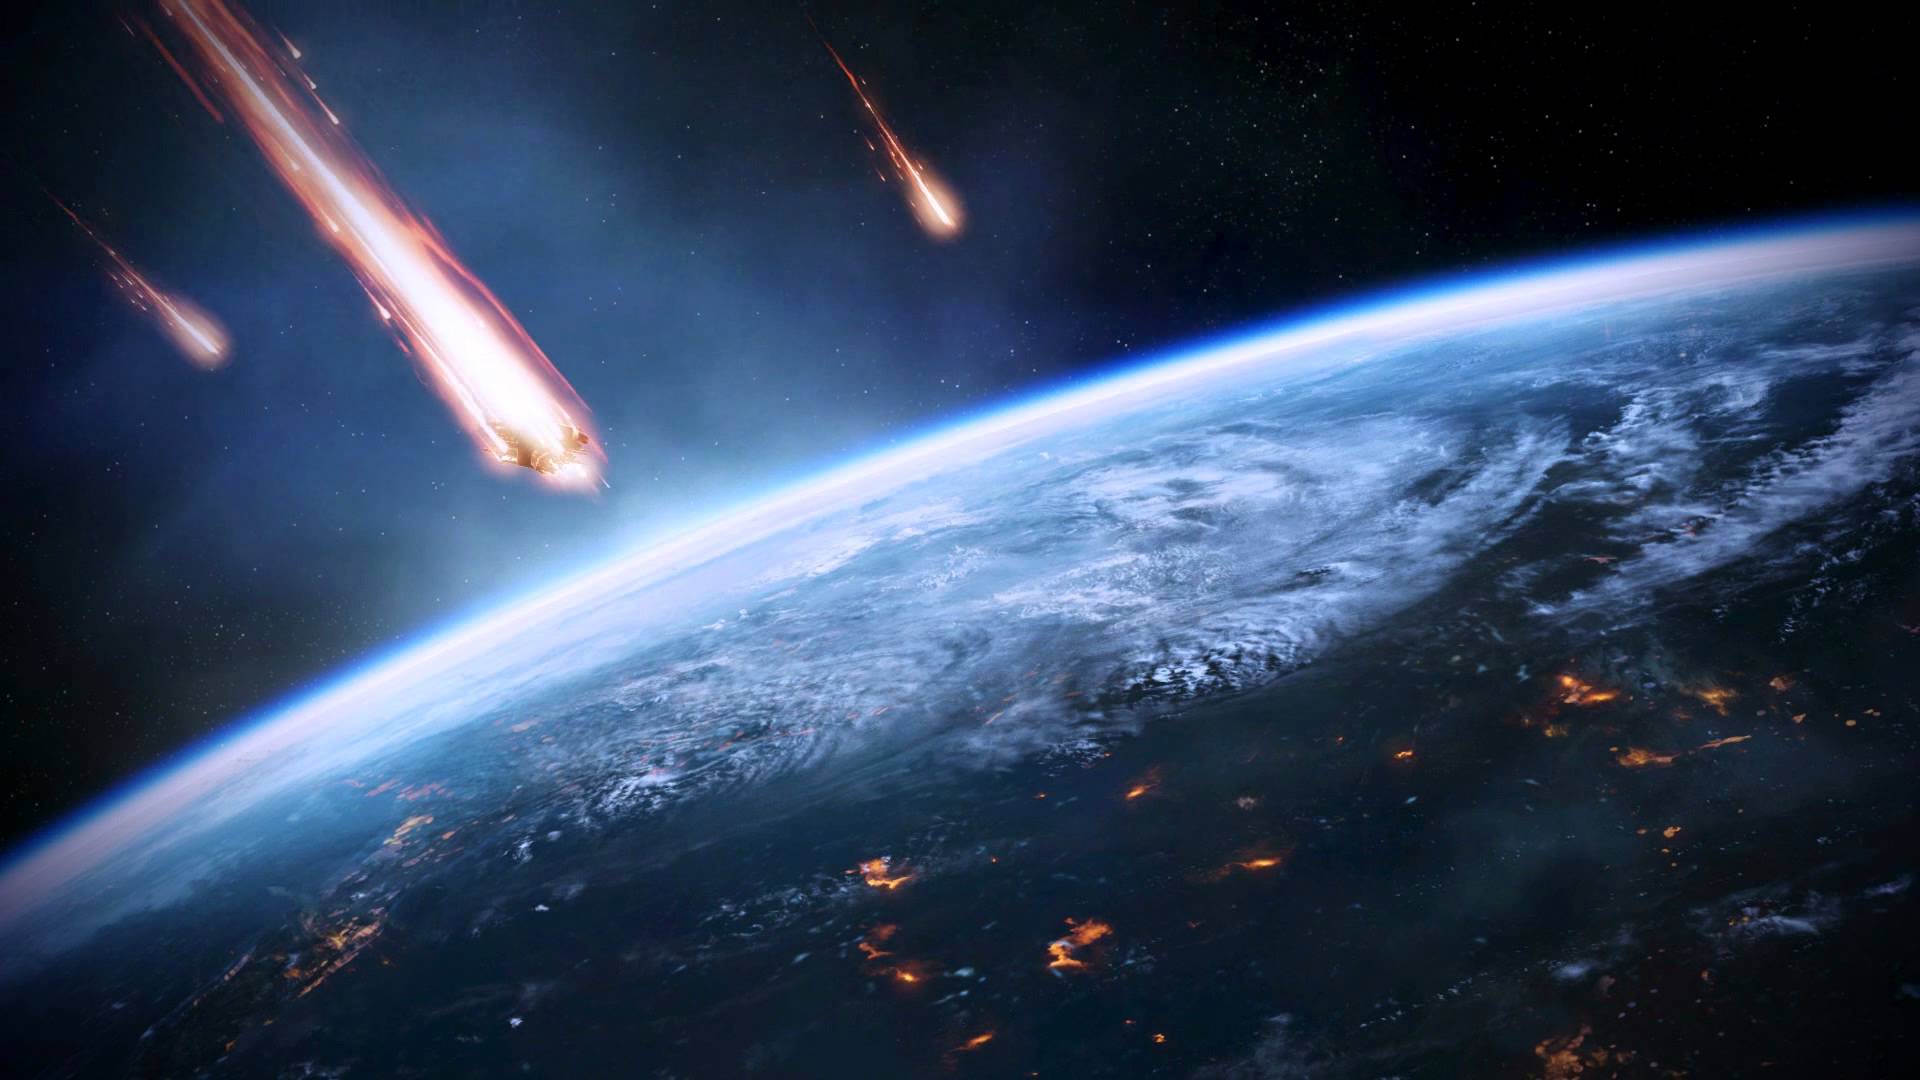 Mass Effect 3 Earth Under Siege Dreamscene Video Wallpaper - YouTube